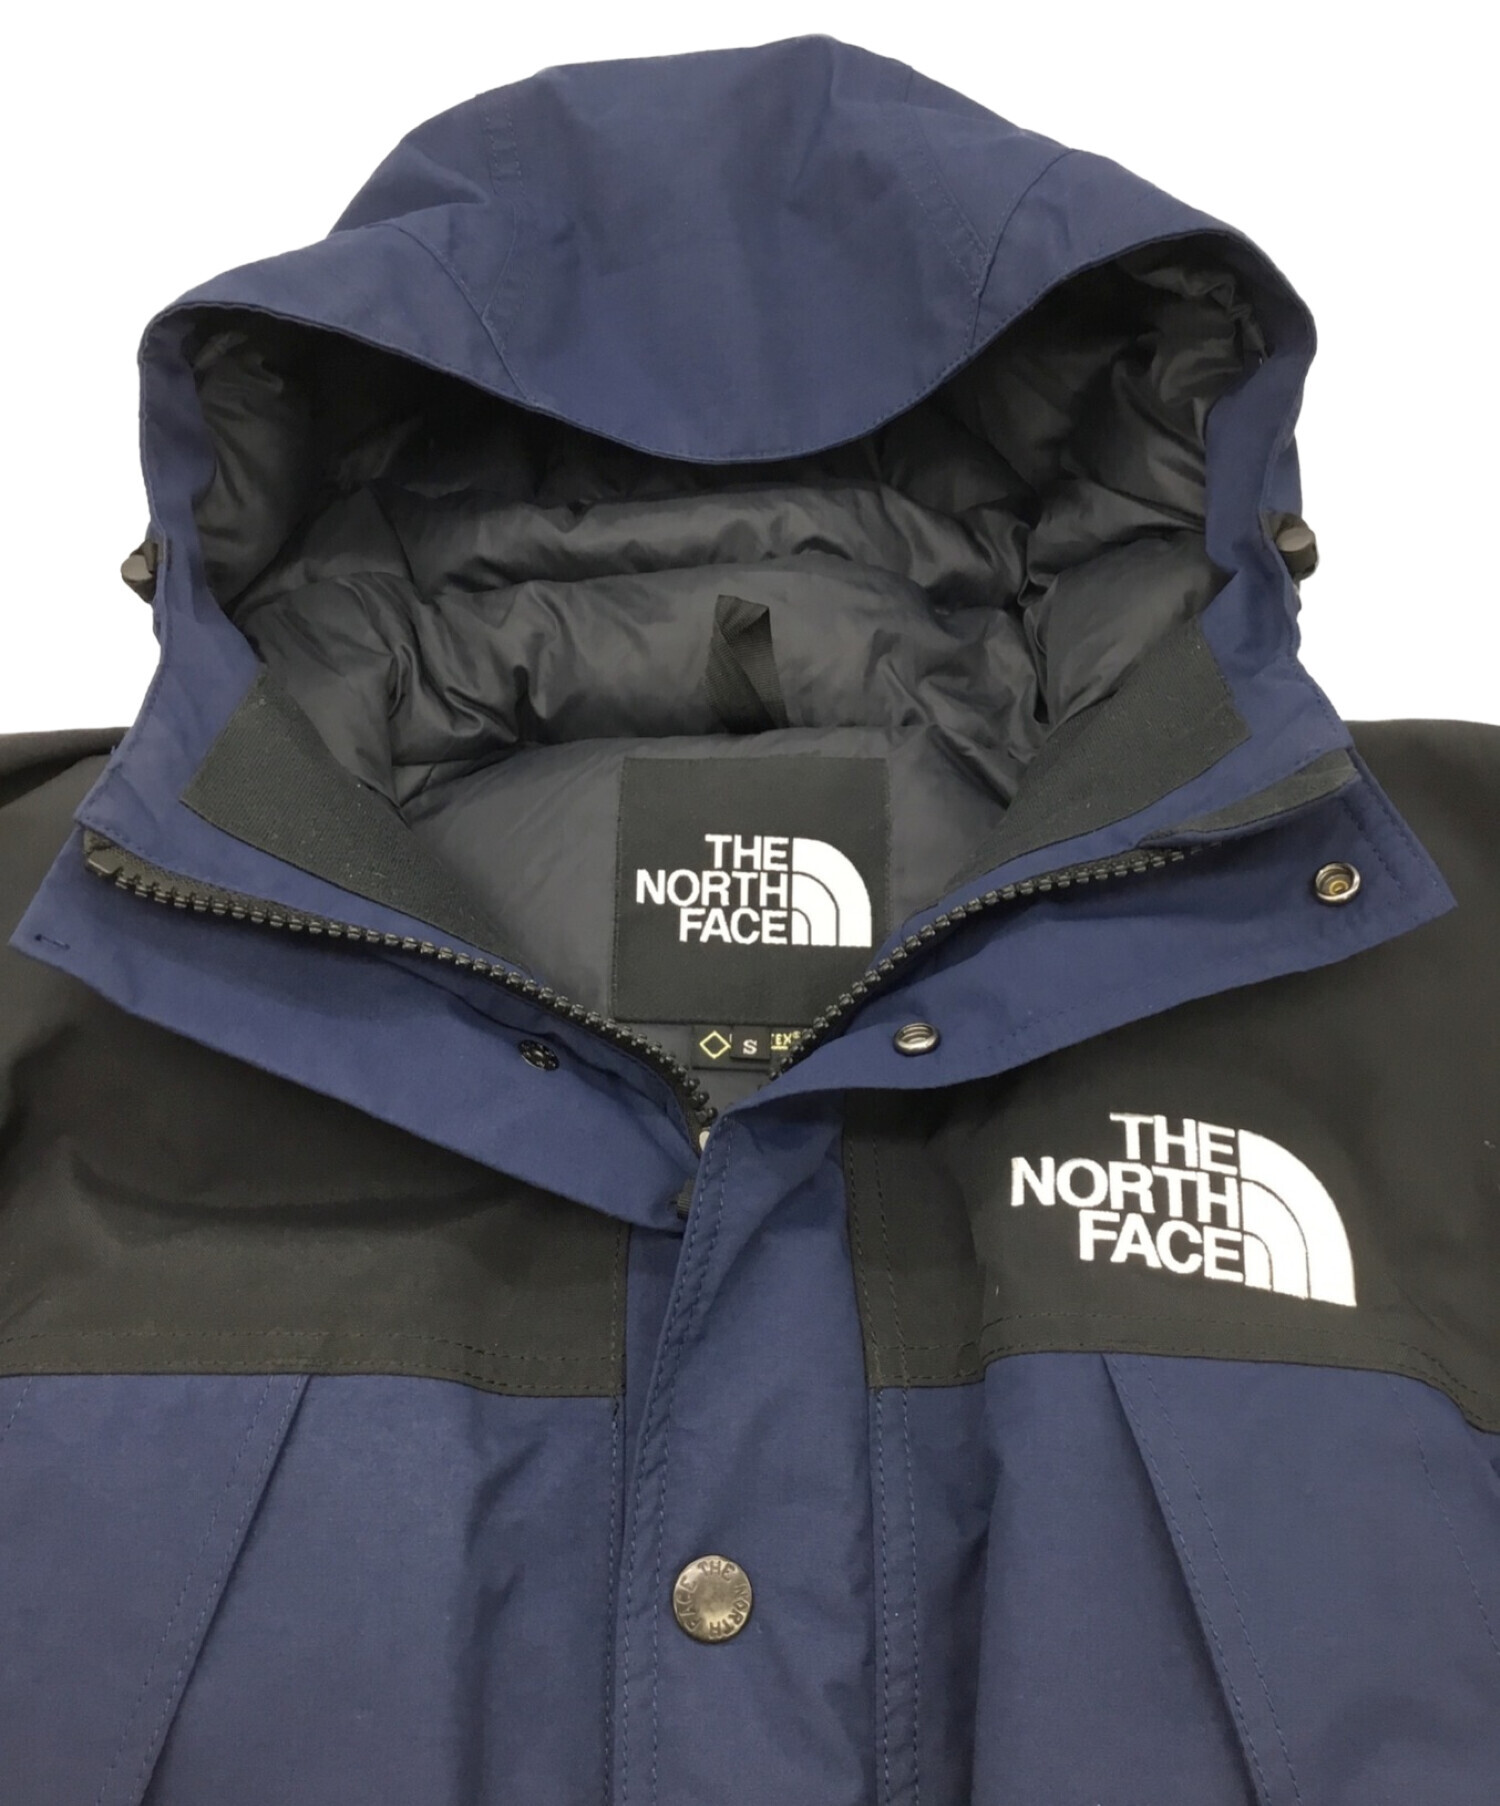 THE NORTH FACE (ザ ノース フェイス) ダウンジャケット ネイビー×ブラック サイズ:S